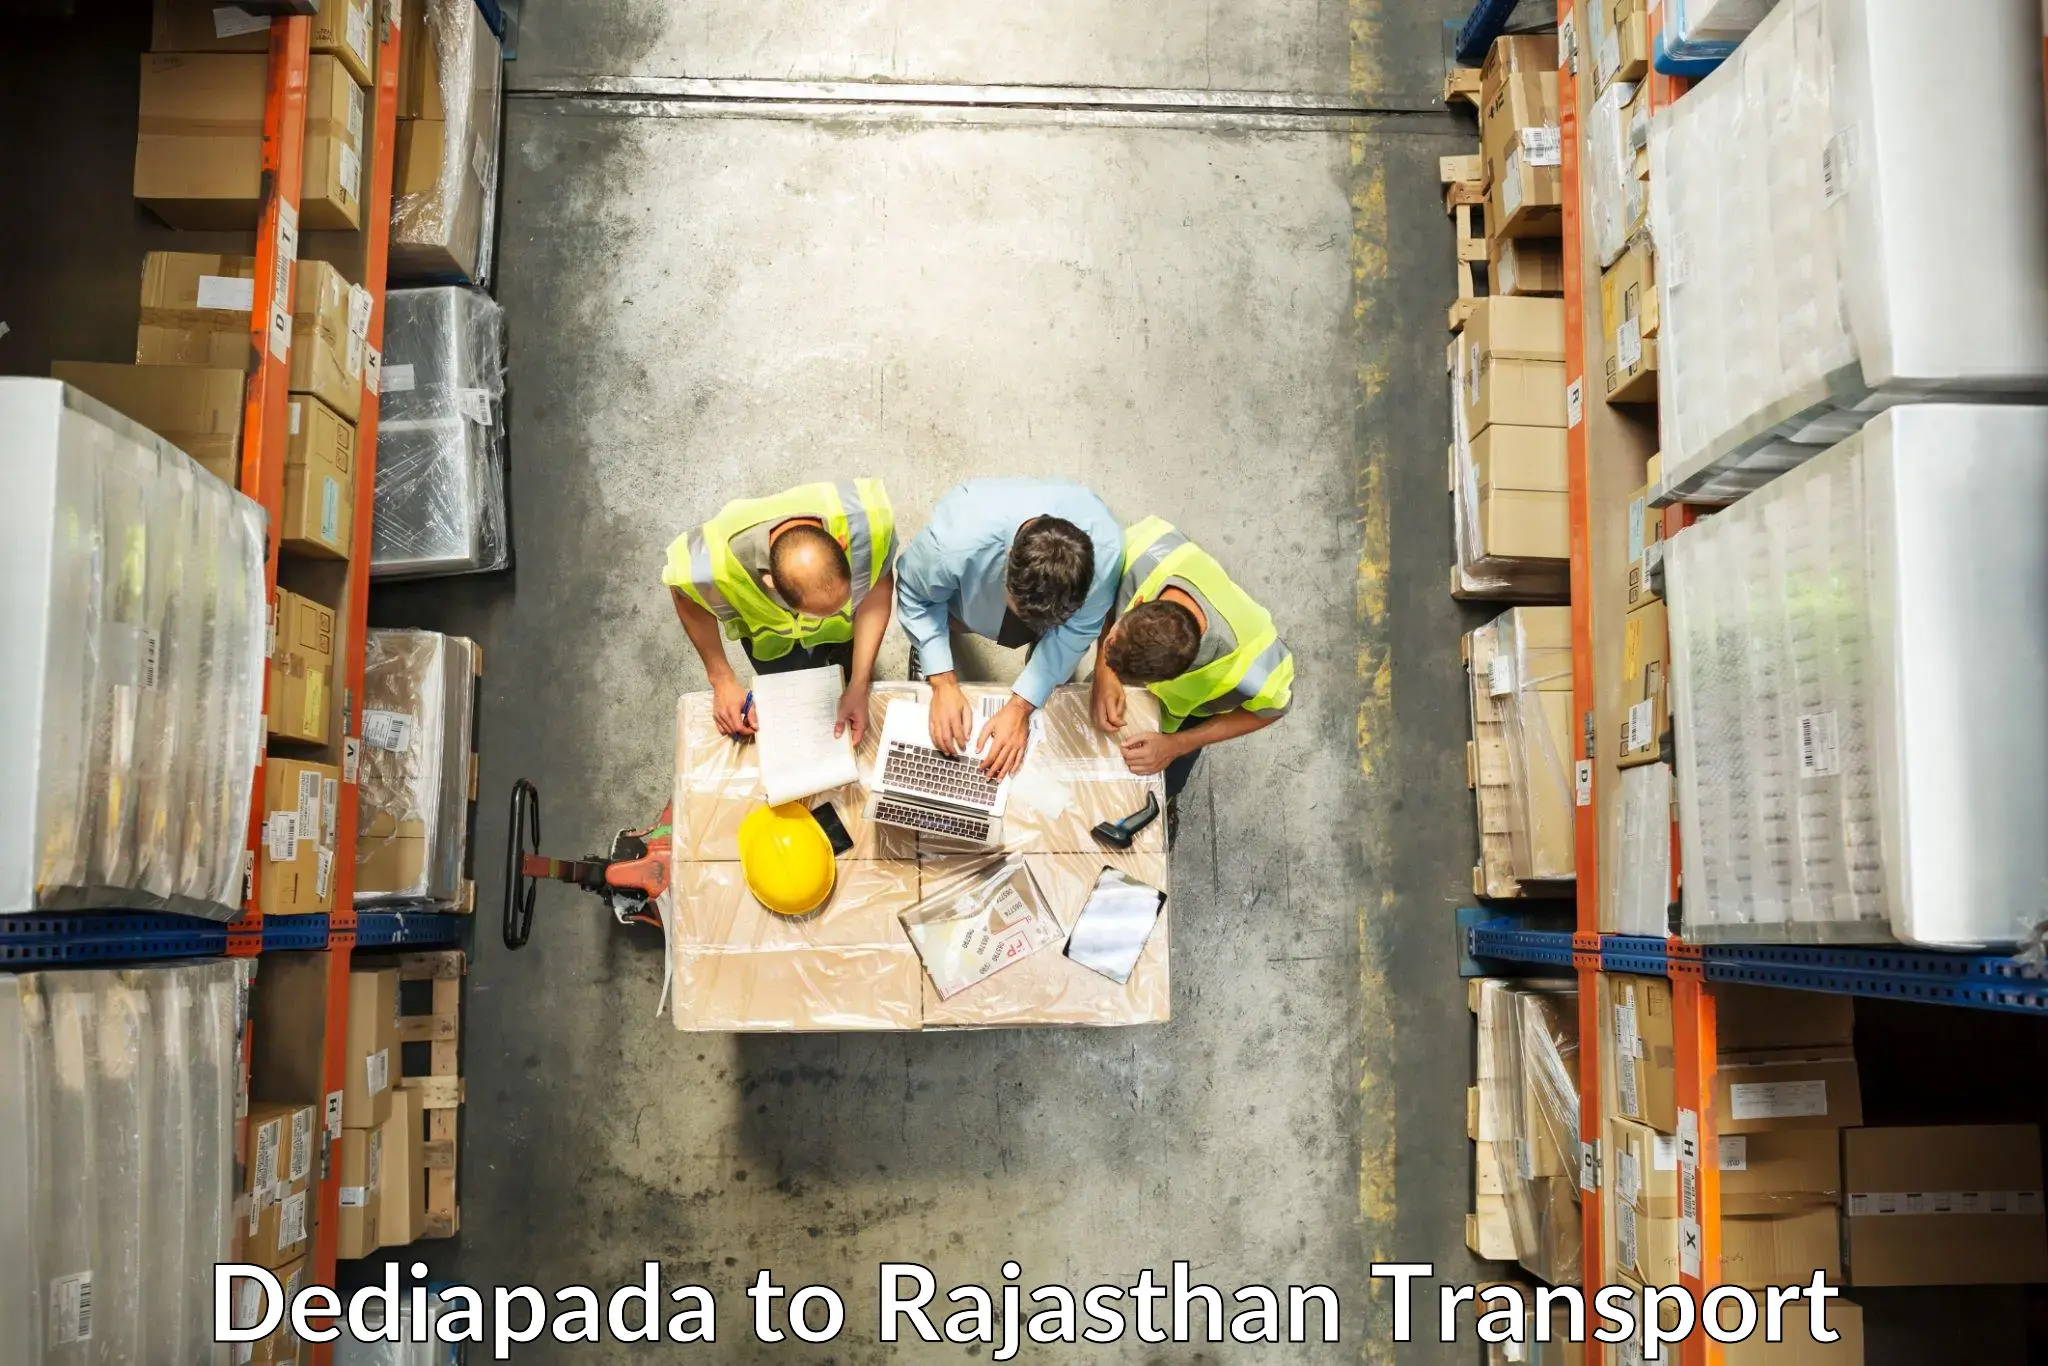 Part load transport service in India Dediapada to Kekri